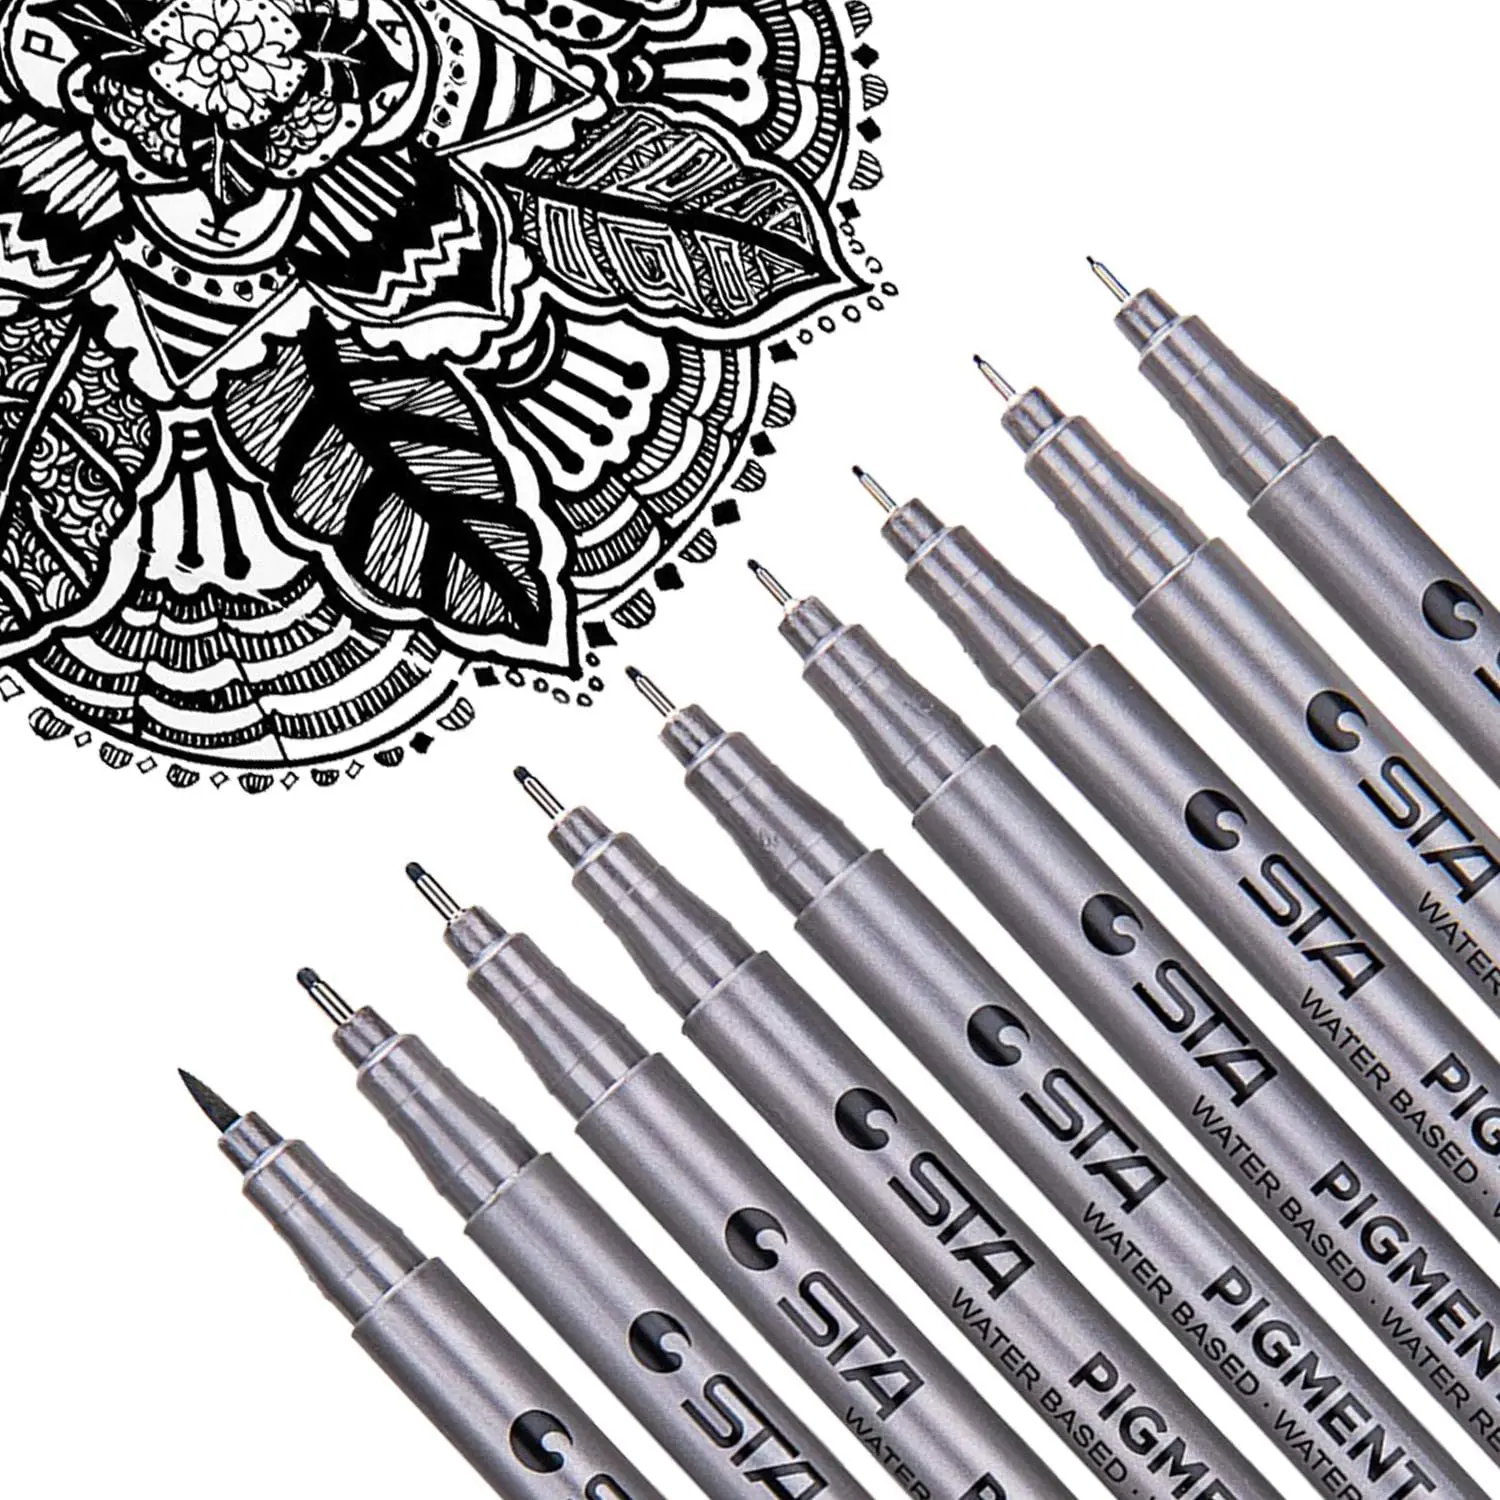 

Черная микро-ручка, чернильные ручки, ручки для рисования с мелкими точками для набросков, аниме, манга, Иллюстрации художника, журнал